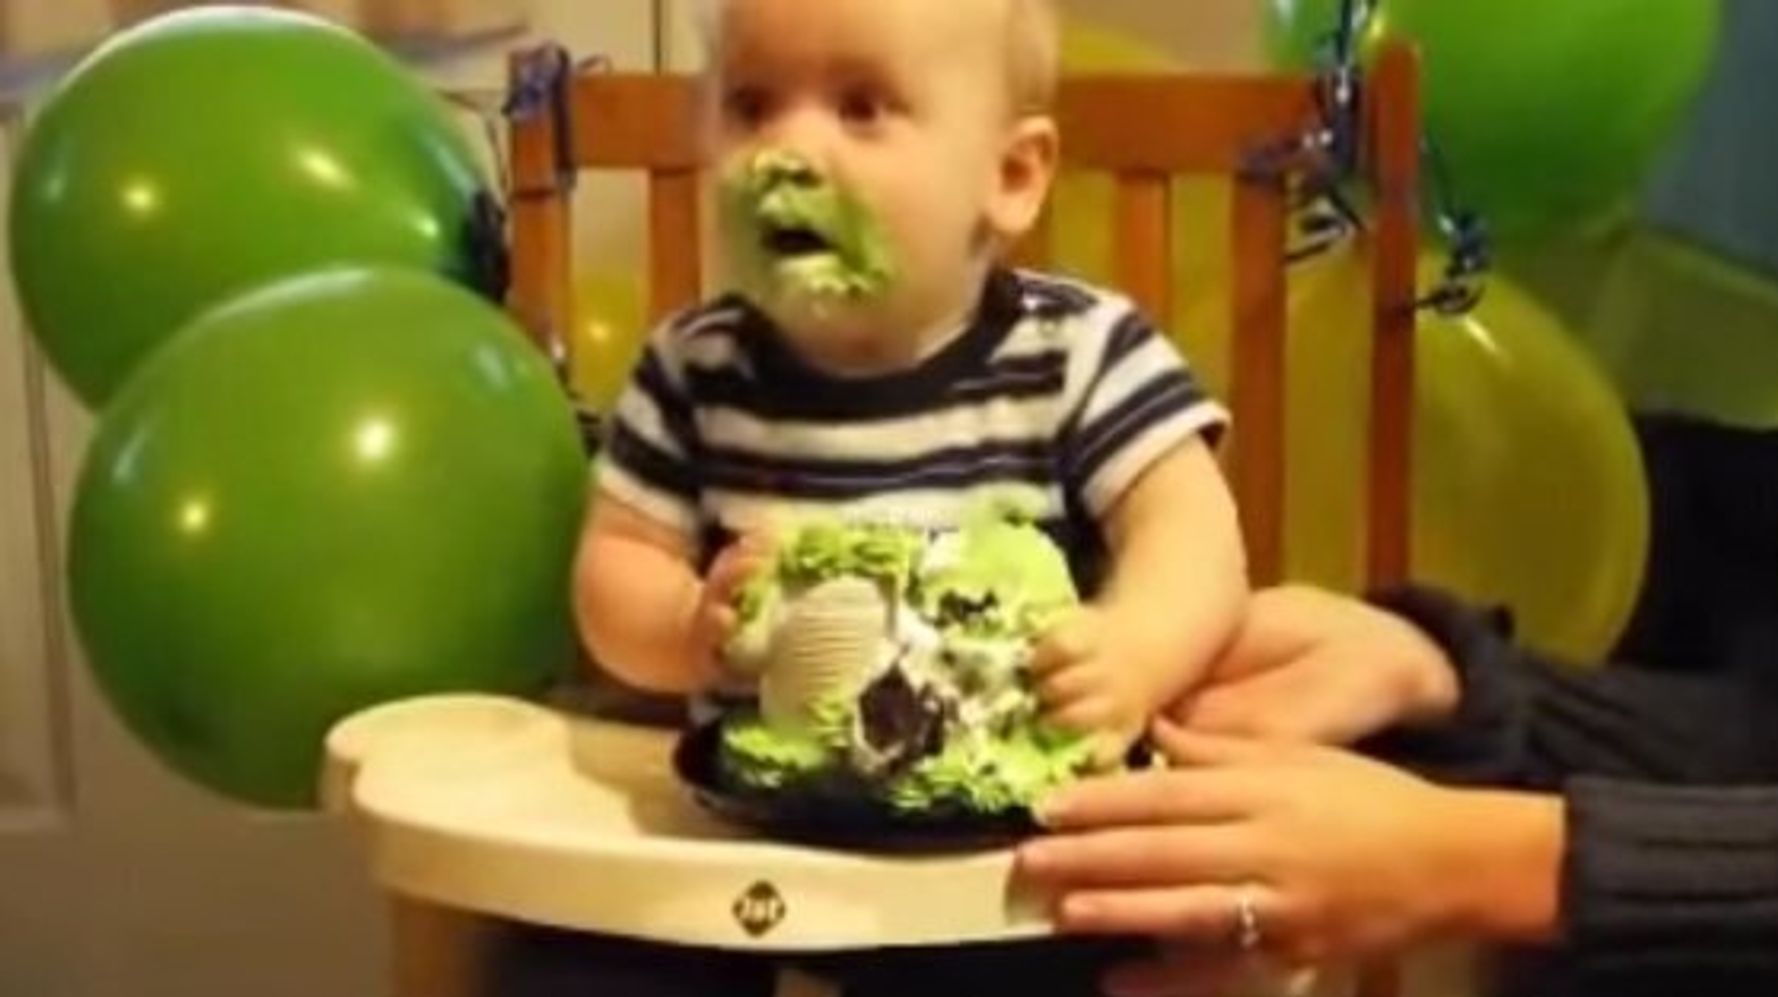 Bébé Garçon Mangeant Son Gâteau Avec Ses Mains, Bébé De 1 An, Enfance  Heureuse, Anniversaire Des Enfants